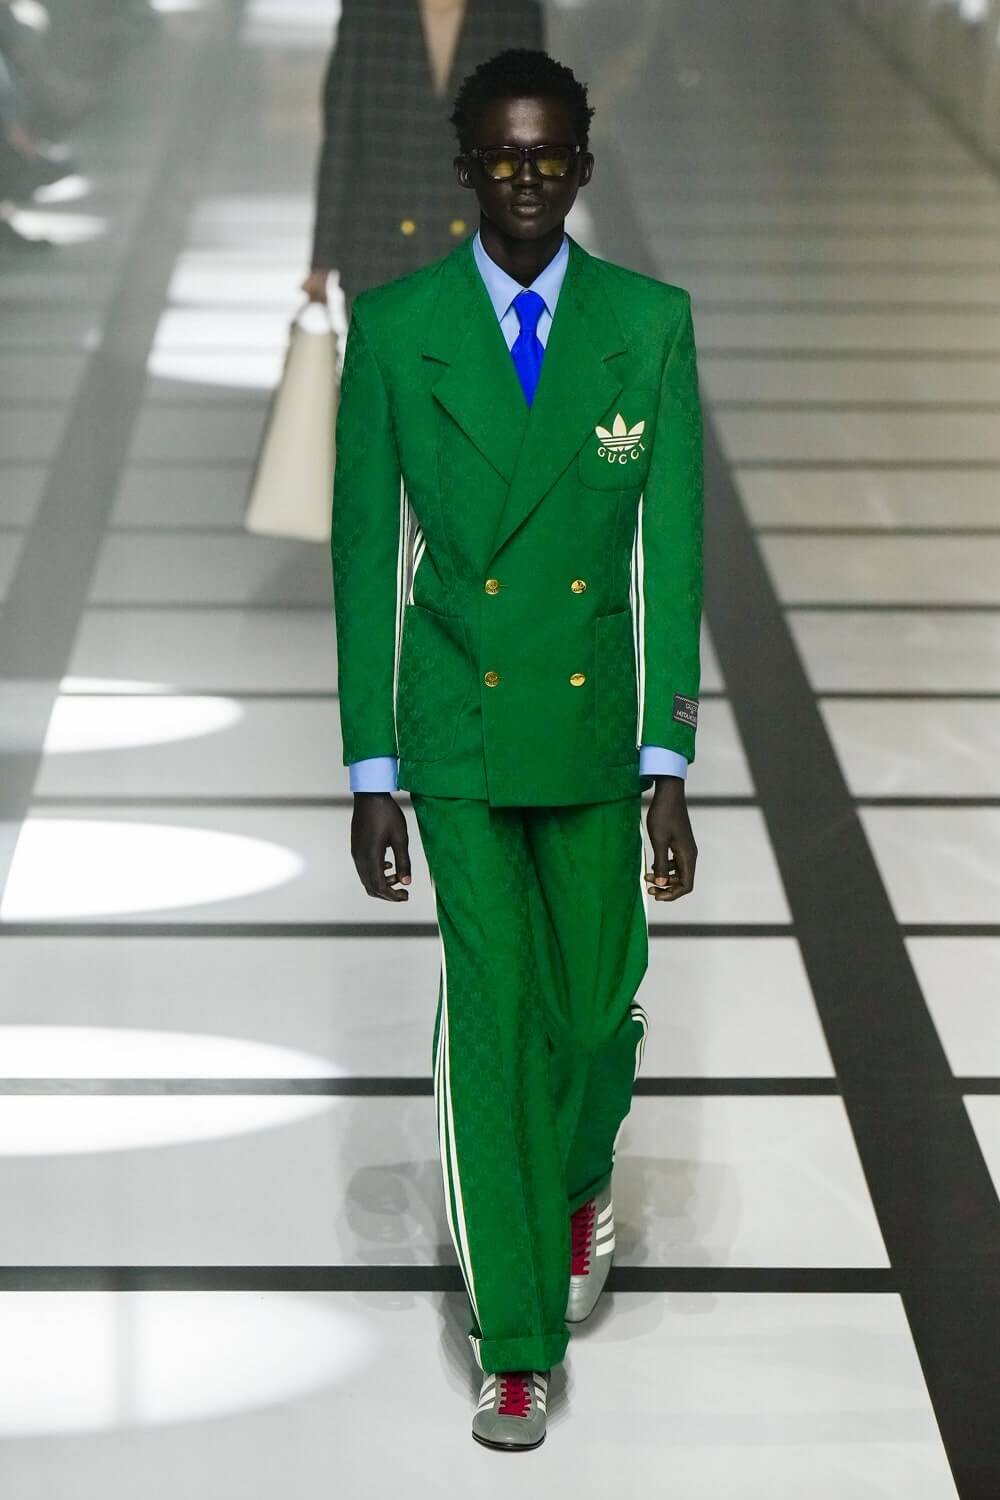 Gucci x Adidas Collaboration Debuts At Milan Fashion Week